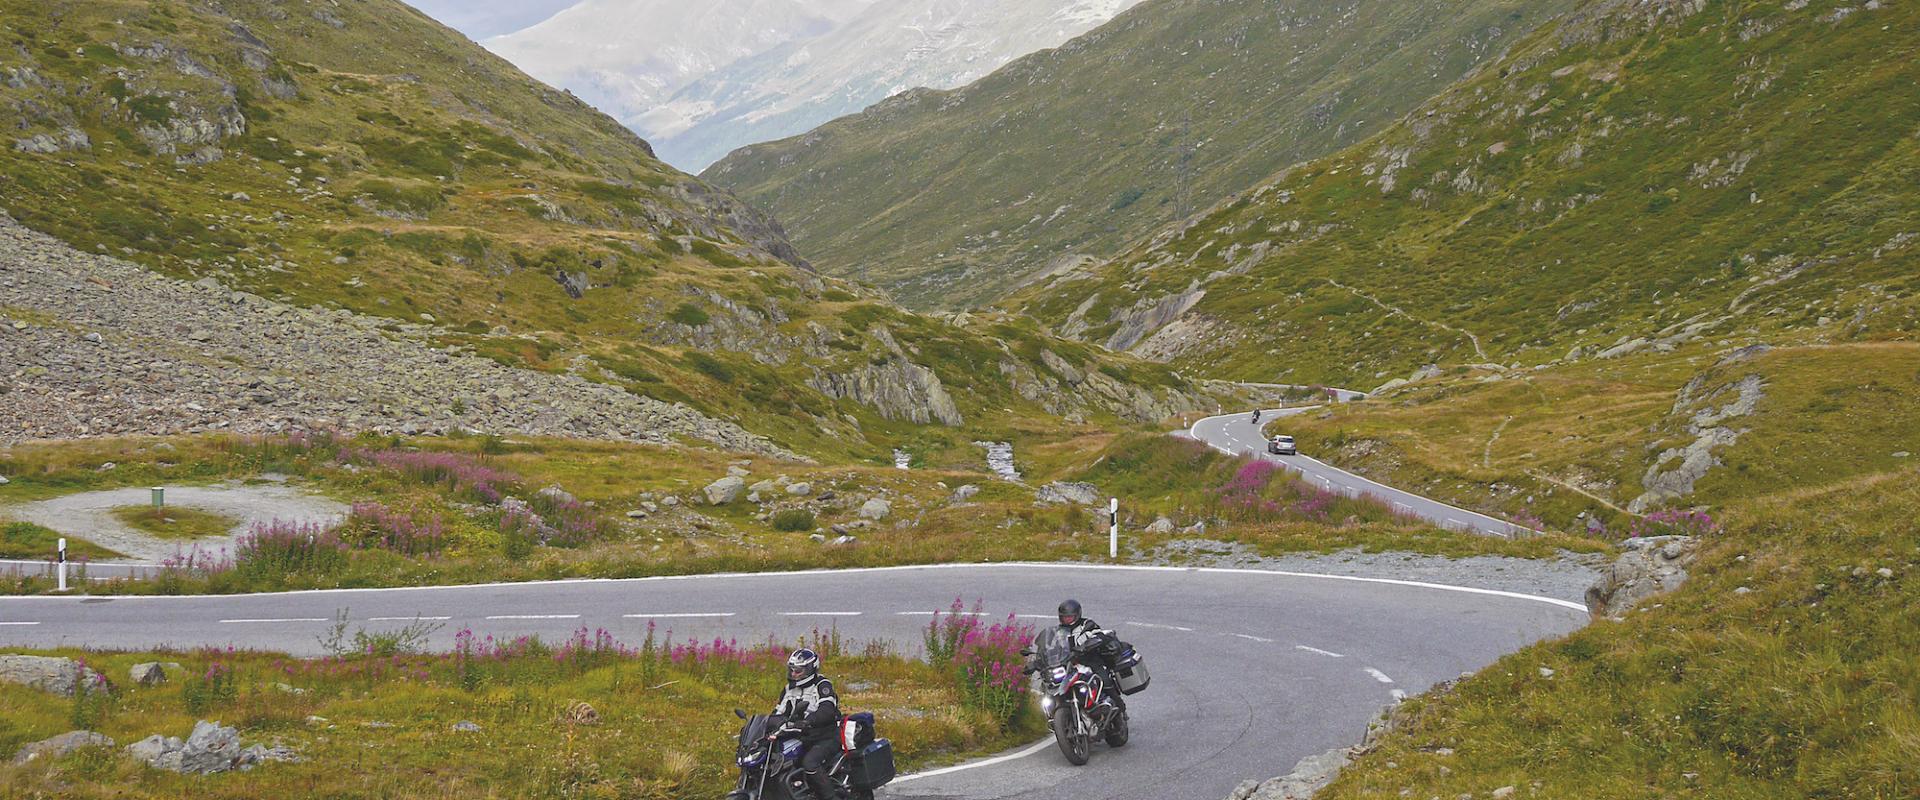 Auf einer kurvenreichen Bergstraße sind zwei Motorradfahrer in einer alpinen Landschaft unterwegs, im Hintergrund erstrecken sich beeindruckende Berge und ein bewölkter Himmel.